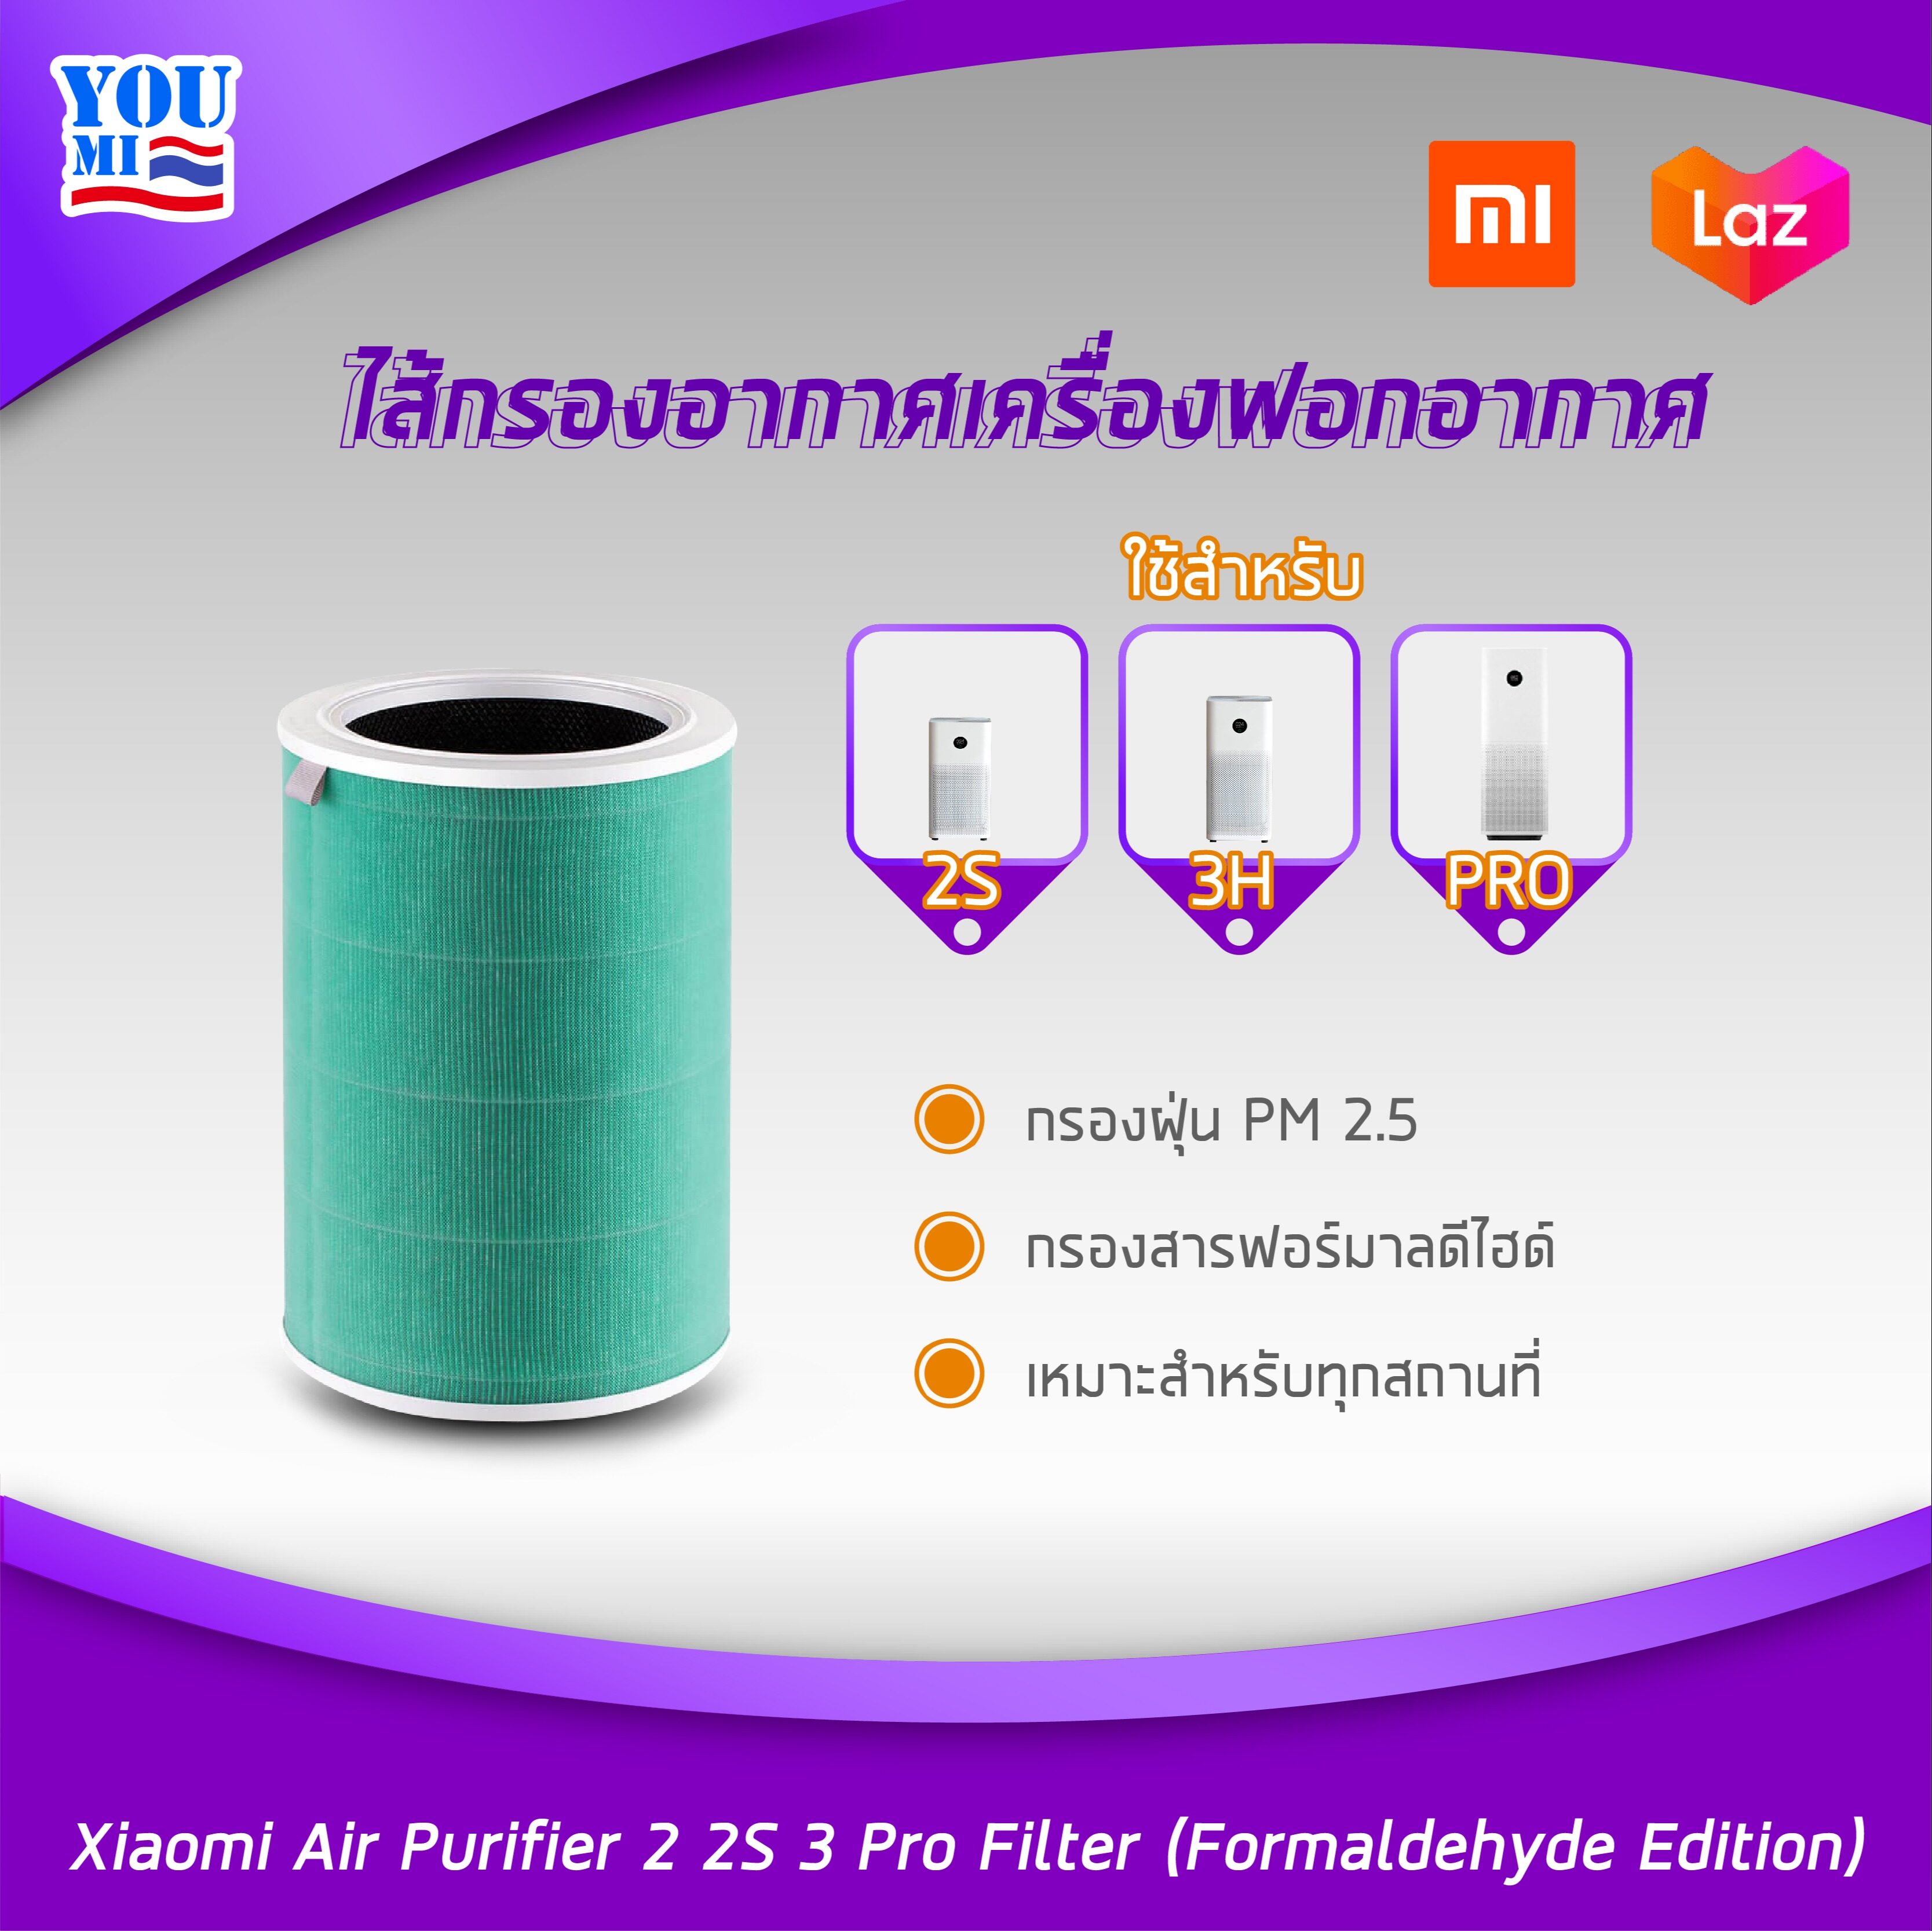 ไส้กรองอากาศเครื่องฟอกอากาศ Xiaomi Air Purifier 2 2S 3 Pro Filter 【Formaldehyde Edition】 PM2.5 กรองฟอร์มาลดีไฮด์